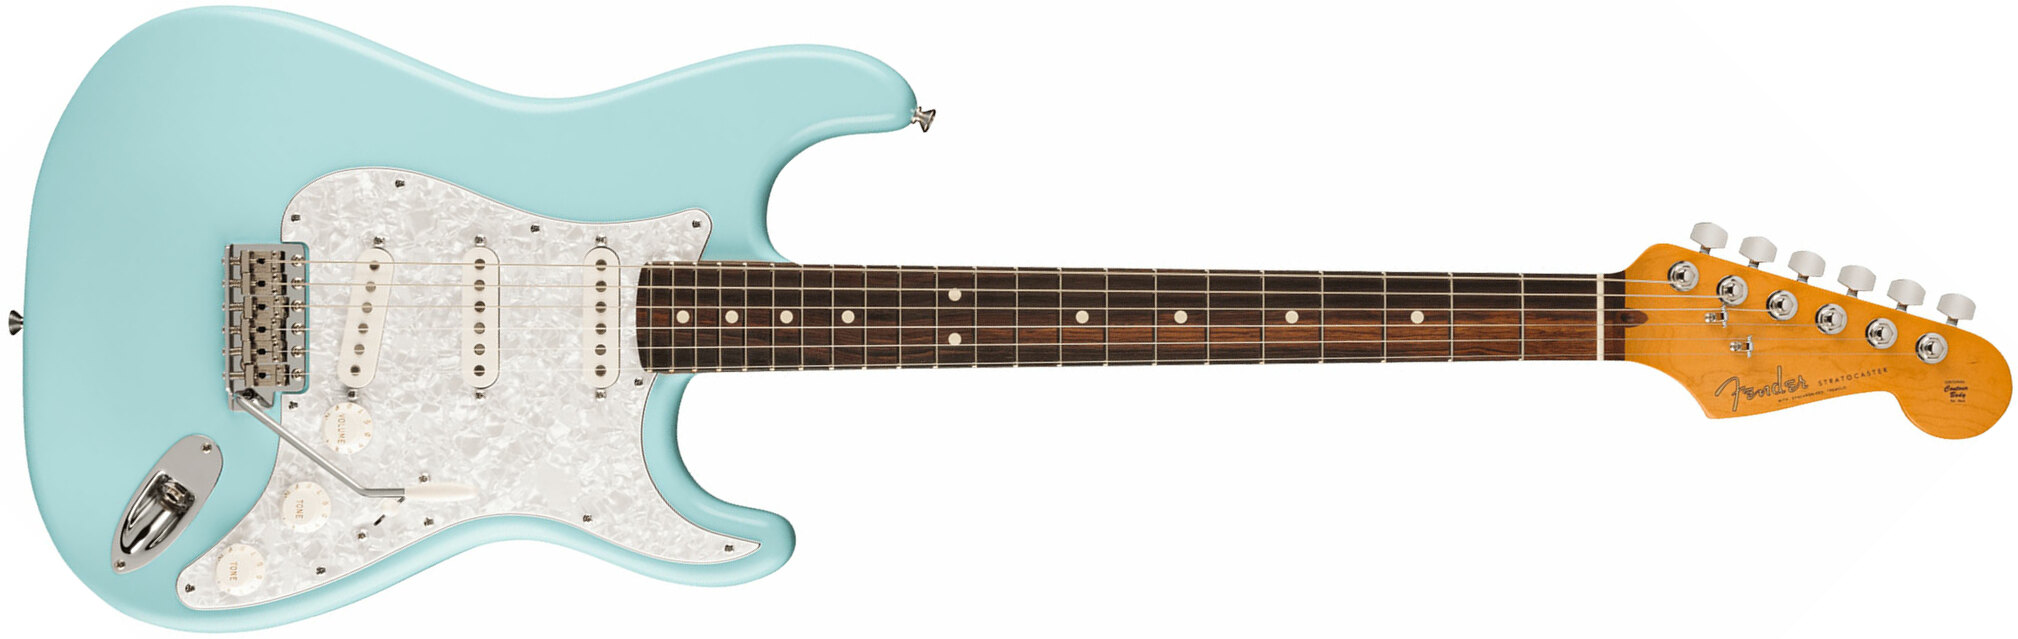 Fender Cory Wong Strat Ltd Signature Usa Stss Trem Rw - Daphne Blue - Guitarra eléctrica con forma de str. - Main picture